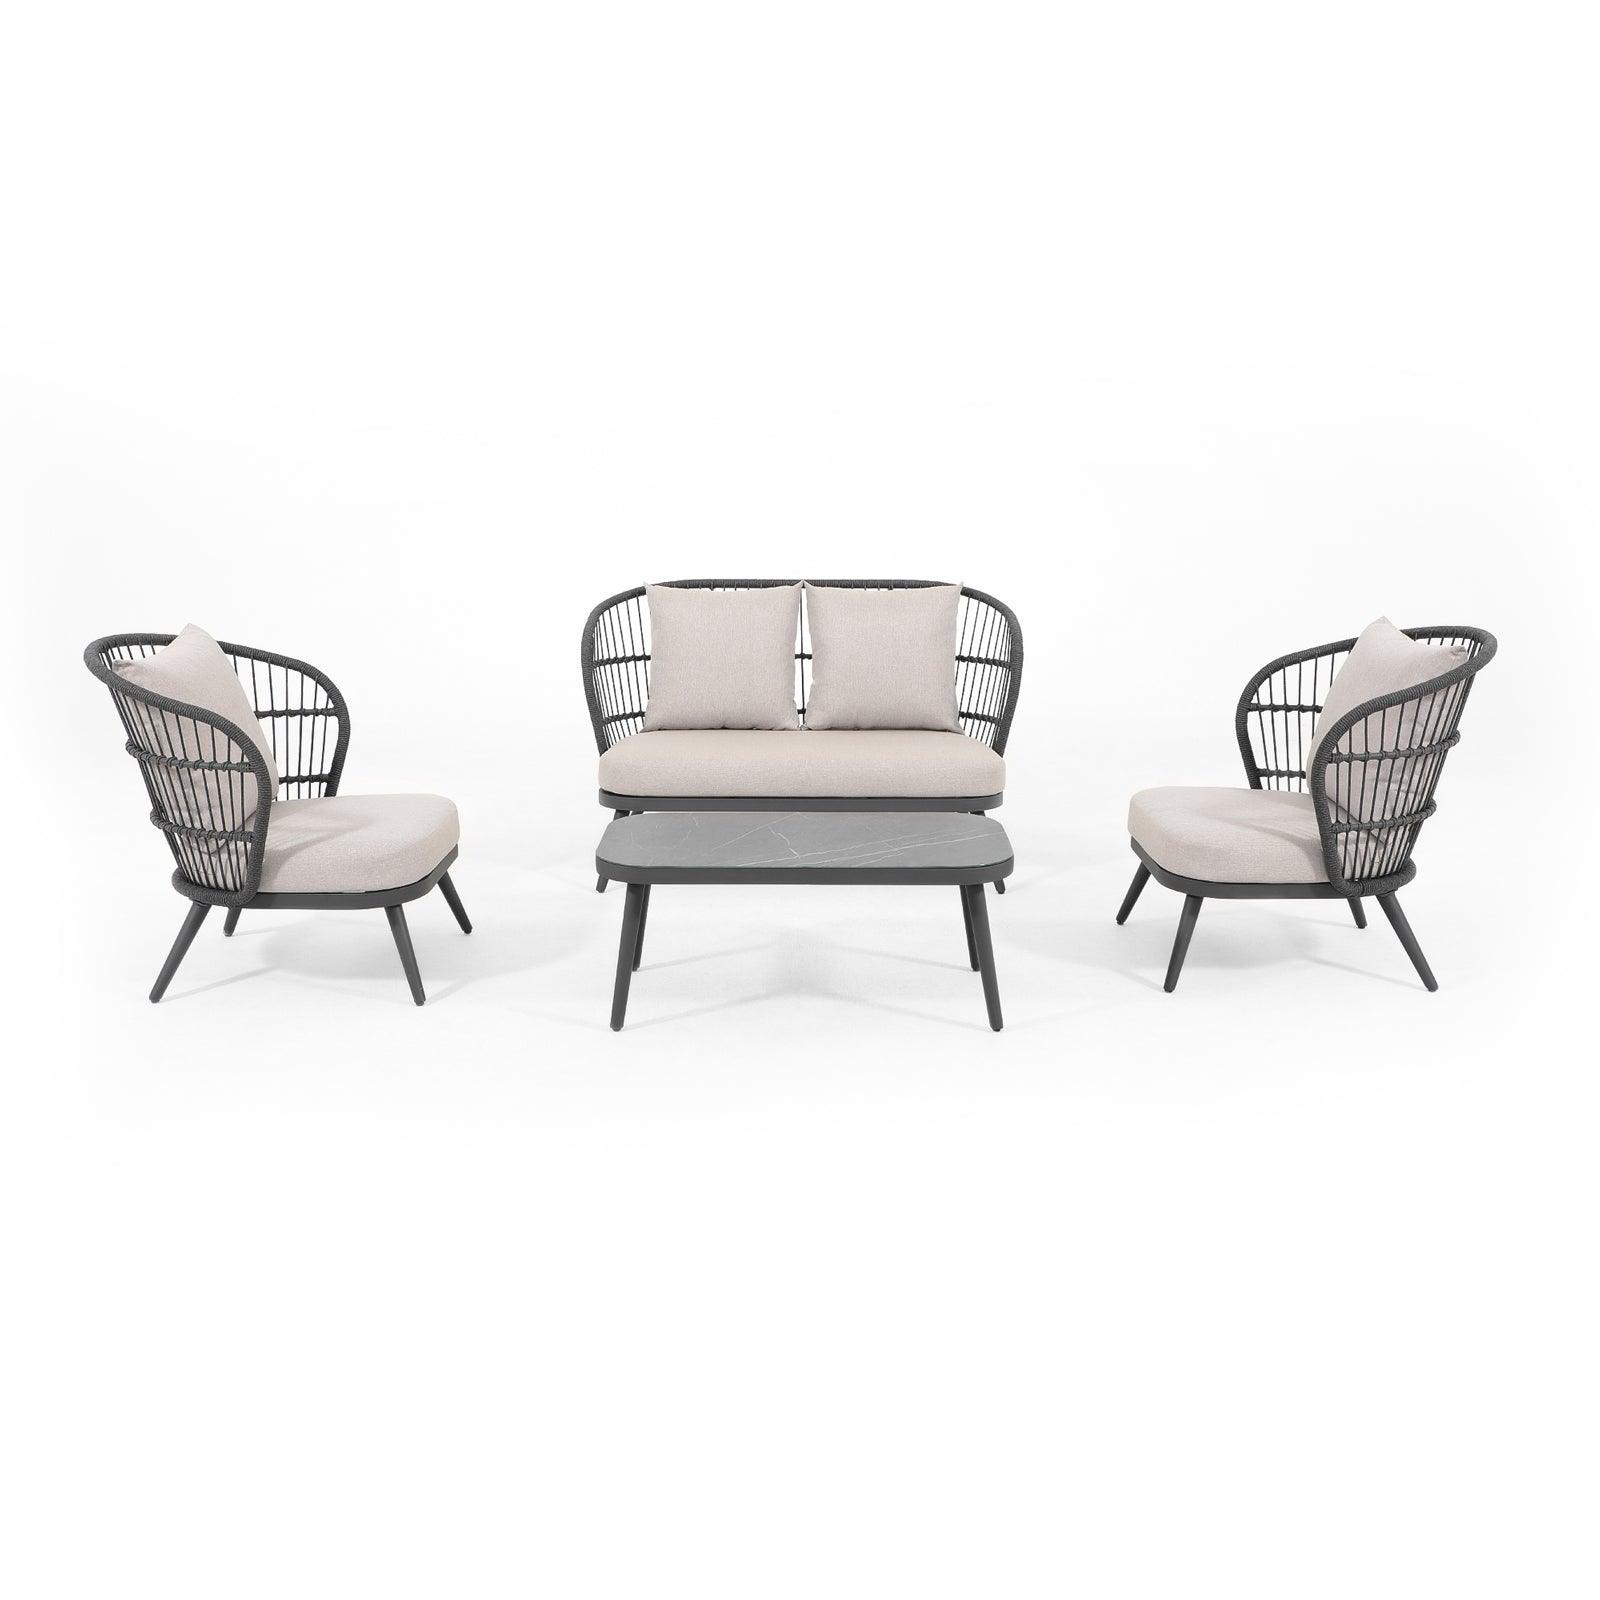 4 Seat Grey Aluminum Patio Conversation Set with Rope Design | Jardina